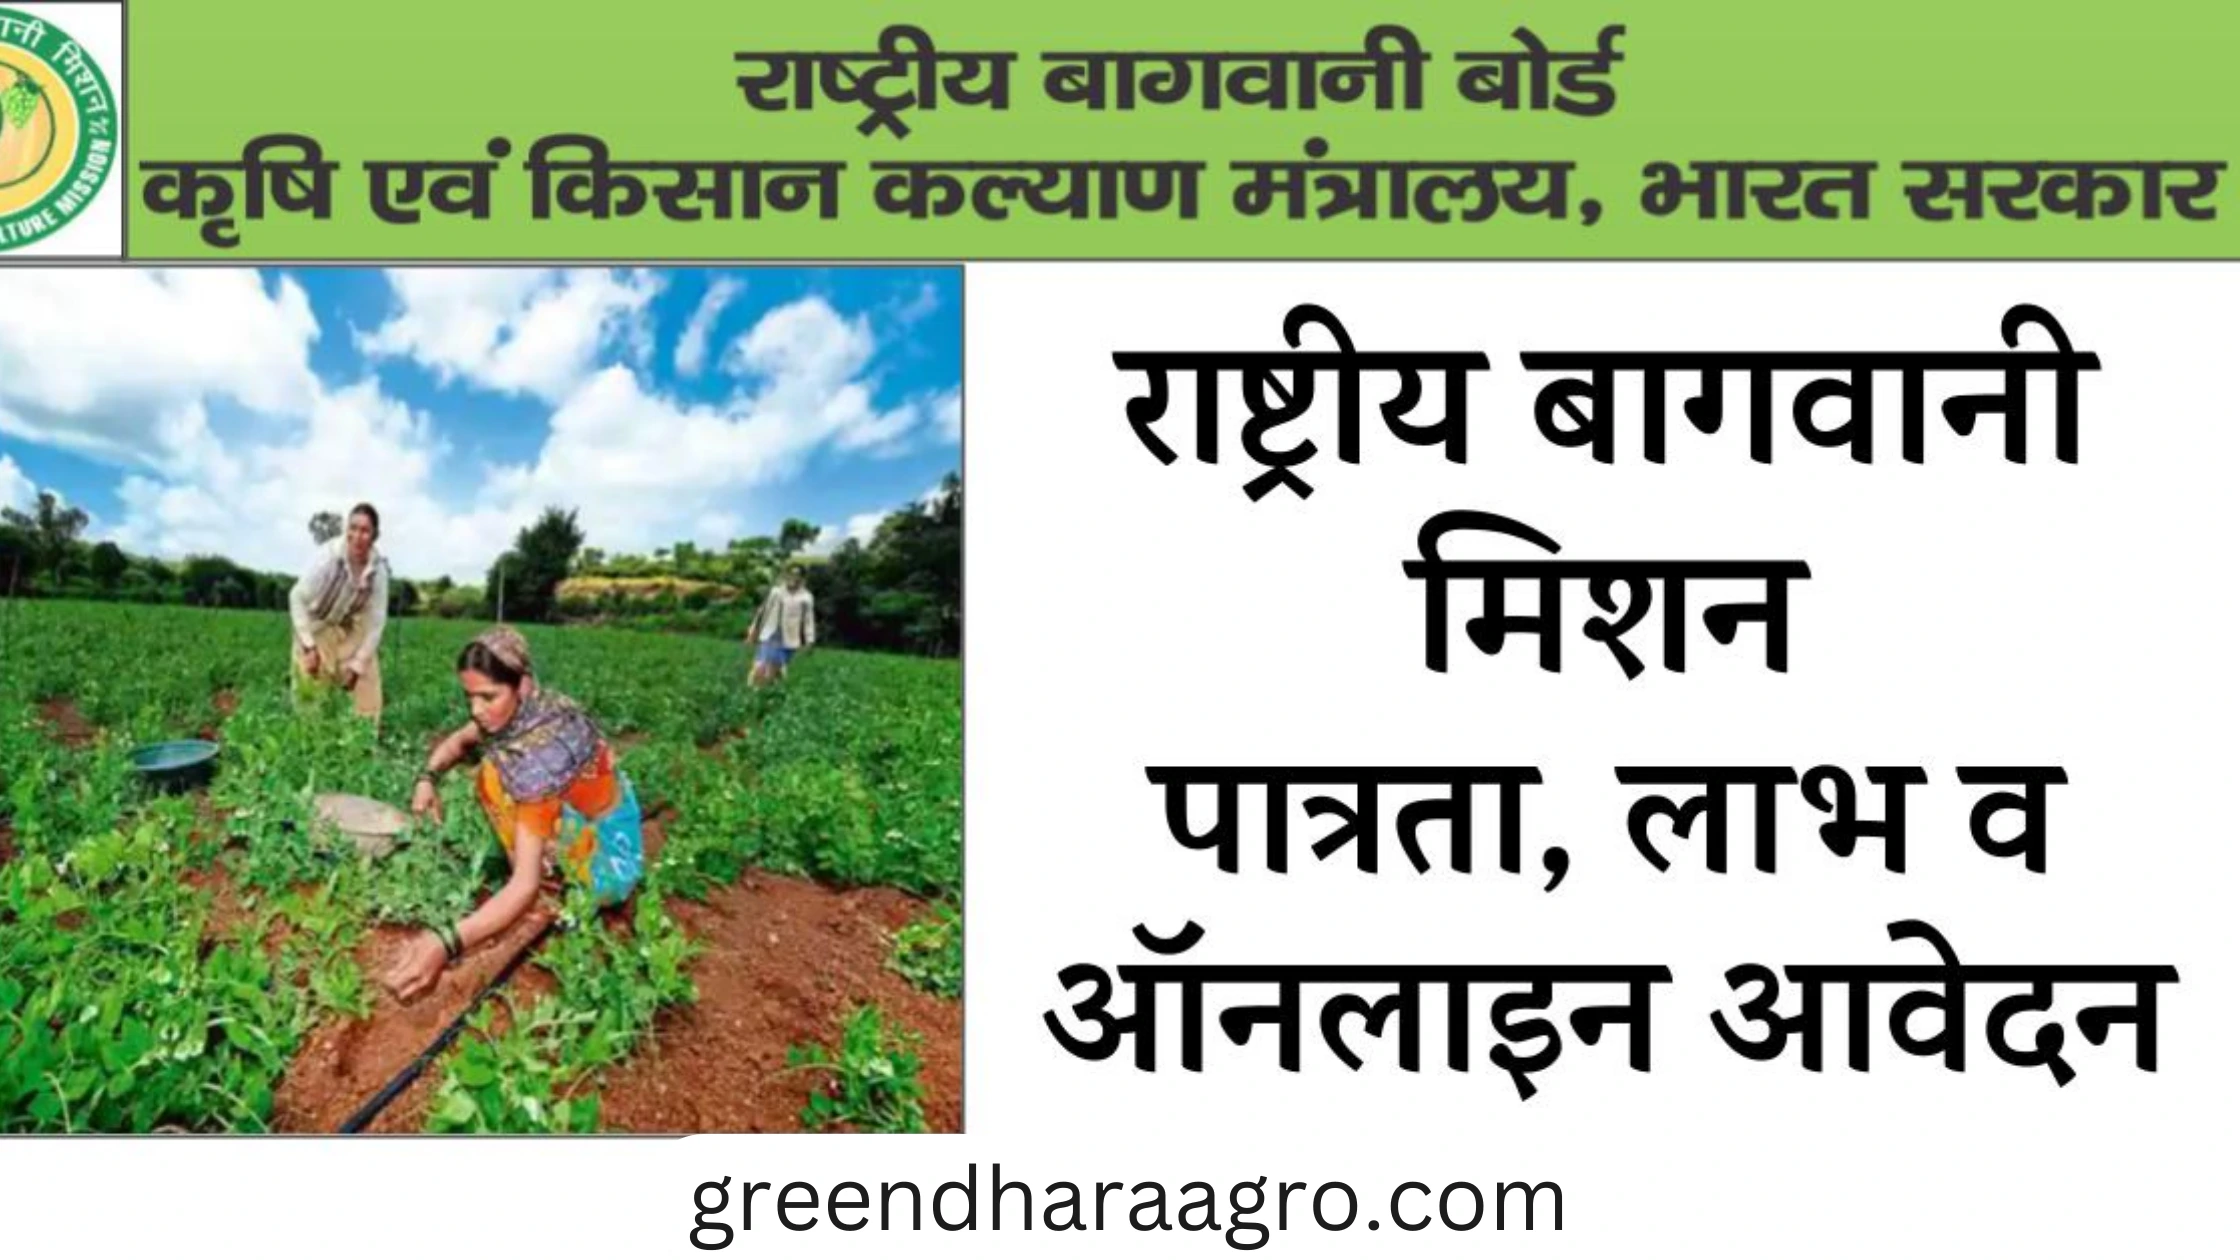 राष्ट्रीय बागवानी मिशन (NHM) क्या है | National Horticulture Mission in Hindi